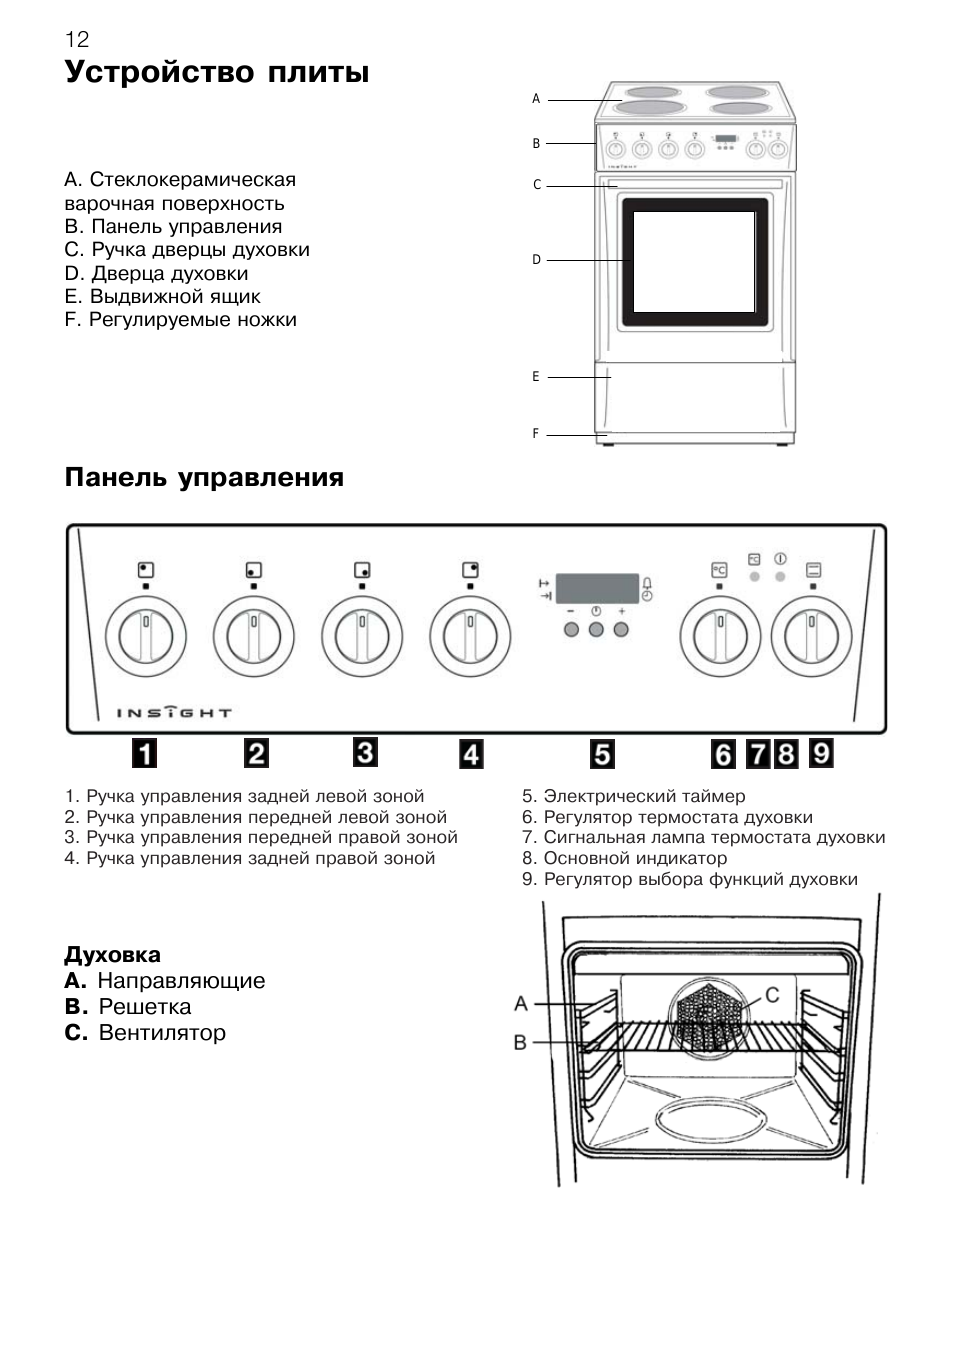 Как включить духовку: как пользоваться в электрической плите, режимы